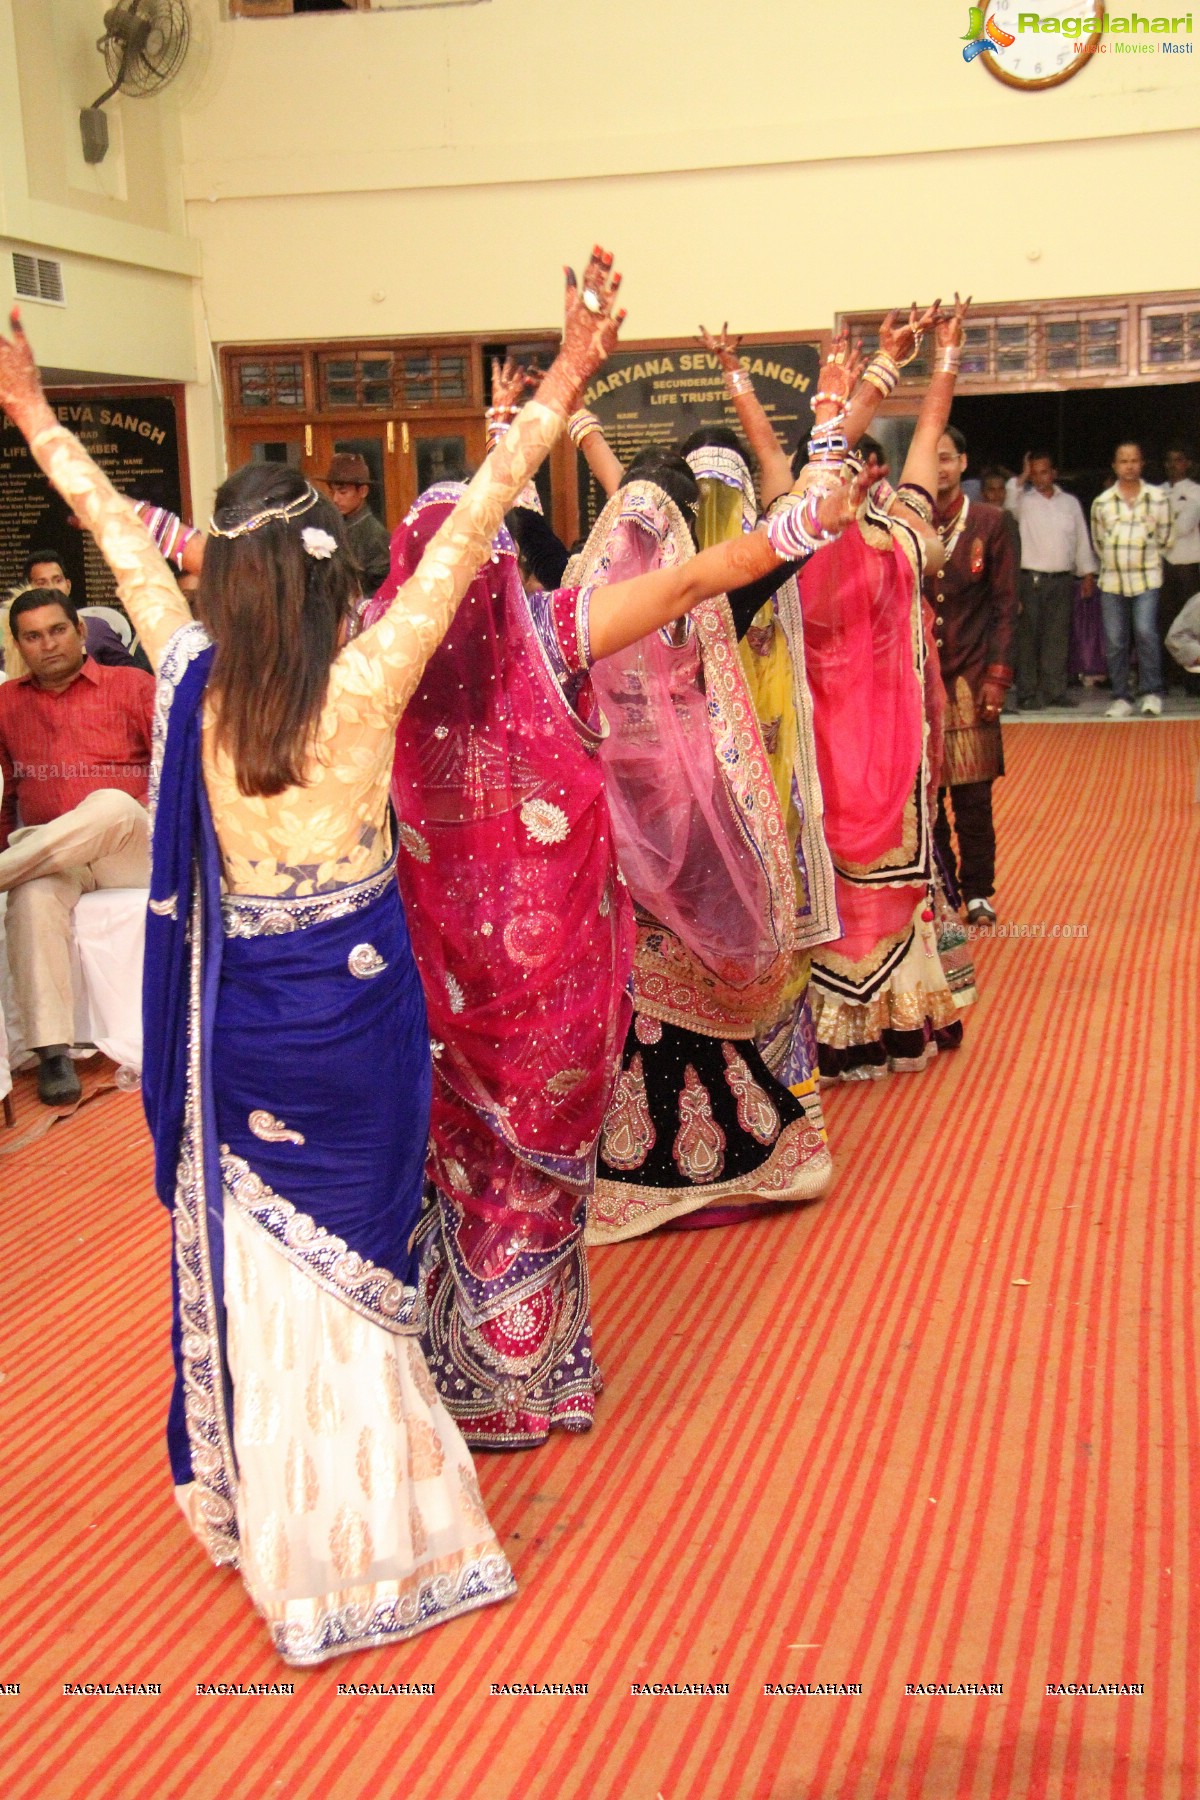 Sangeeth-Nesha's Sangeet Ceremony